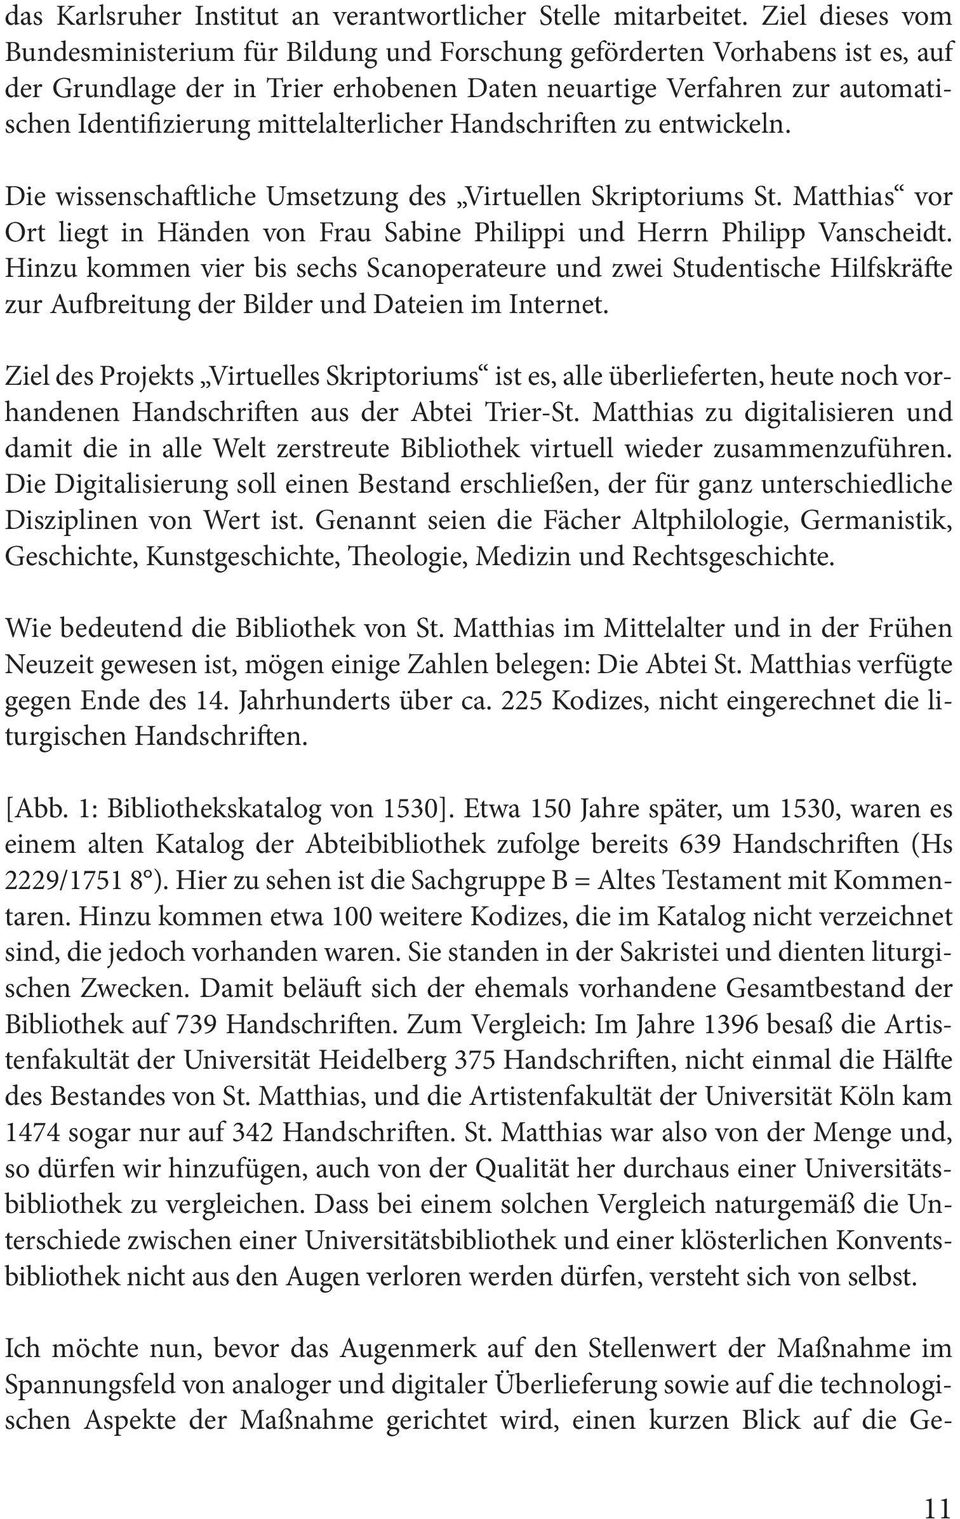 mittelalterlicher Handschriften zu entwickeln. Die wissenschaftliche Umsetzung des Virtuellen Skriptoriums St. Matthias vor Ort liegt in Händen von Frau Sabine Philippi und Herrn Philipp Vanscheidt.